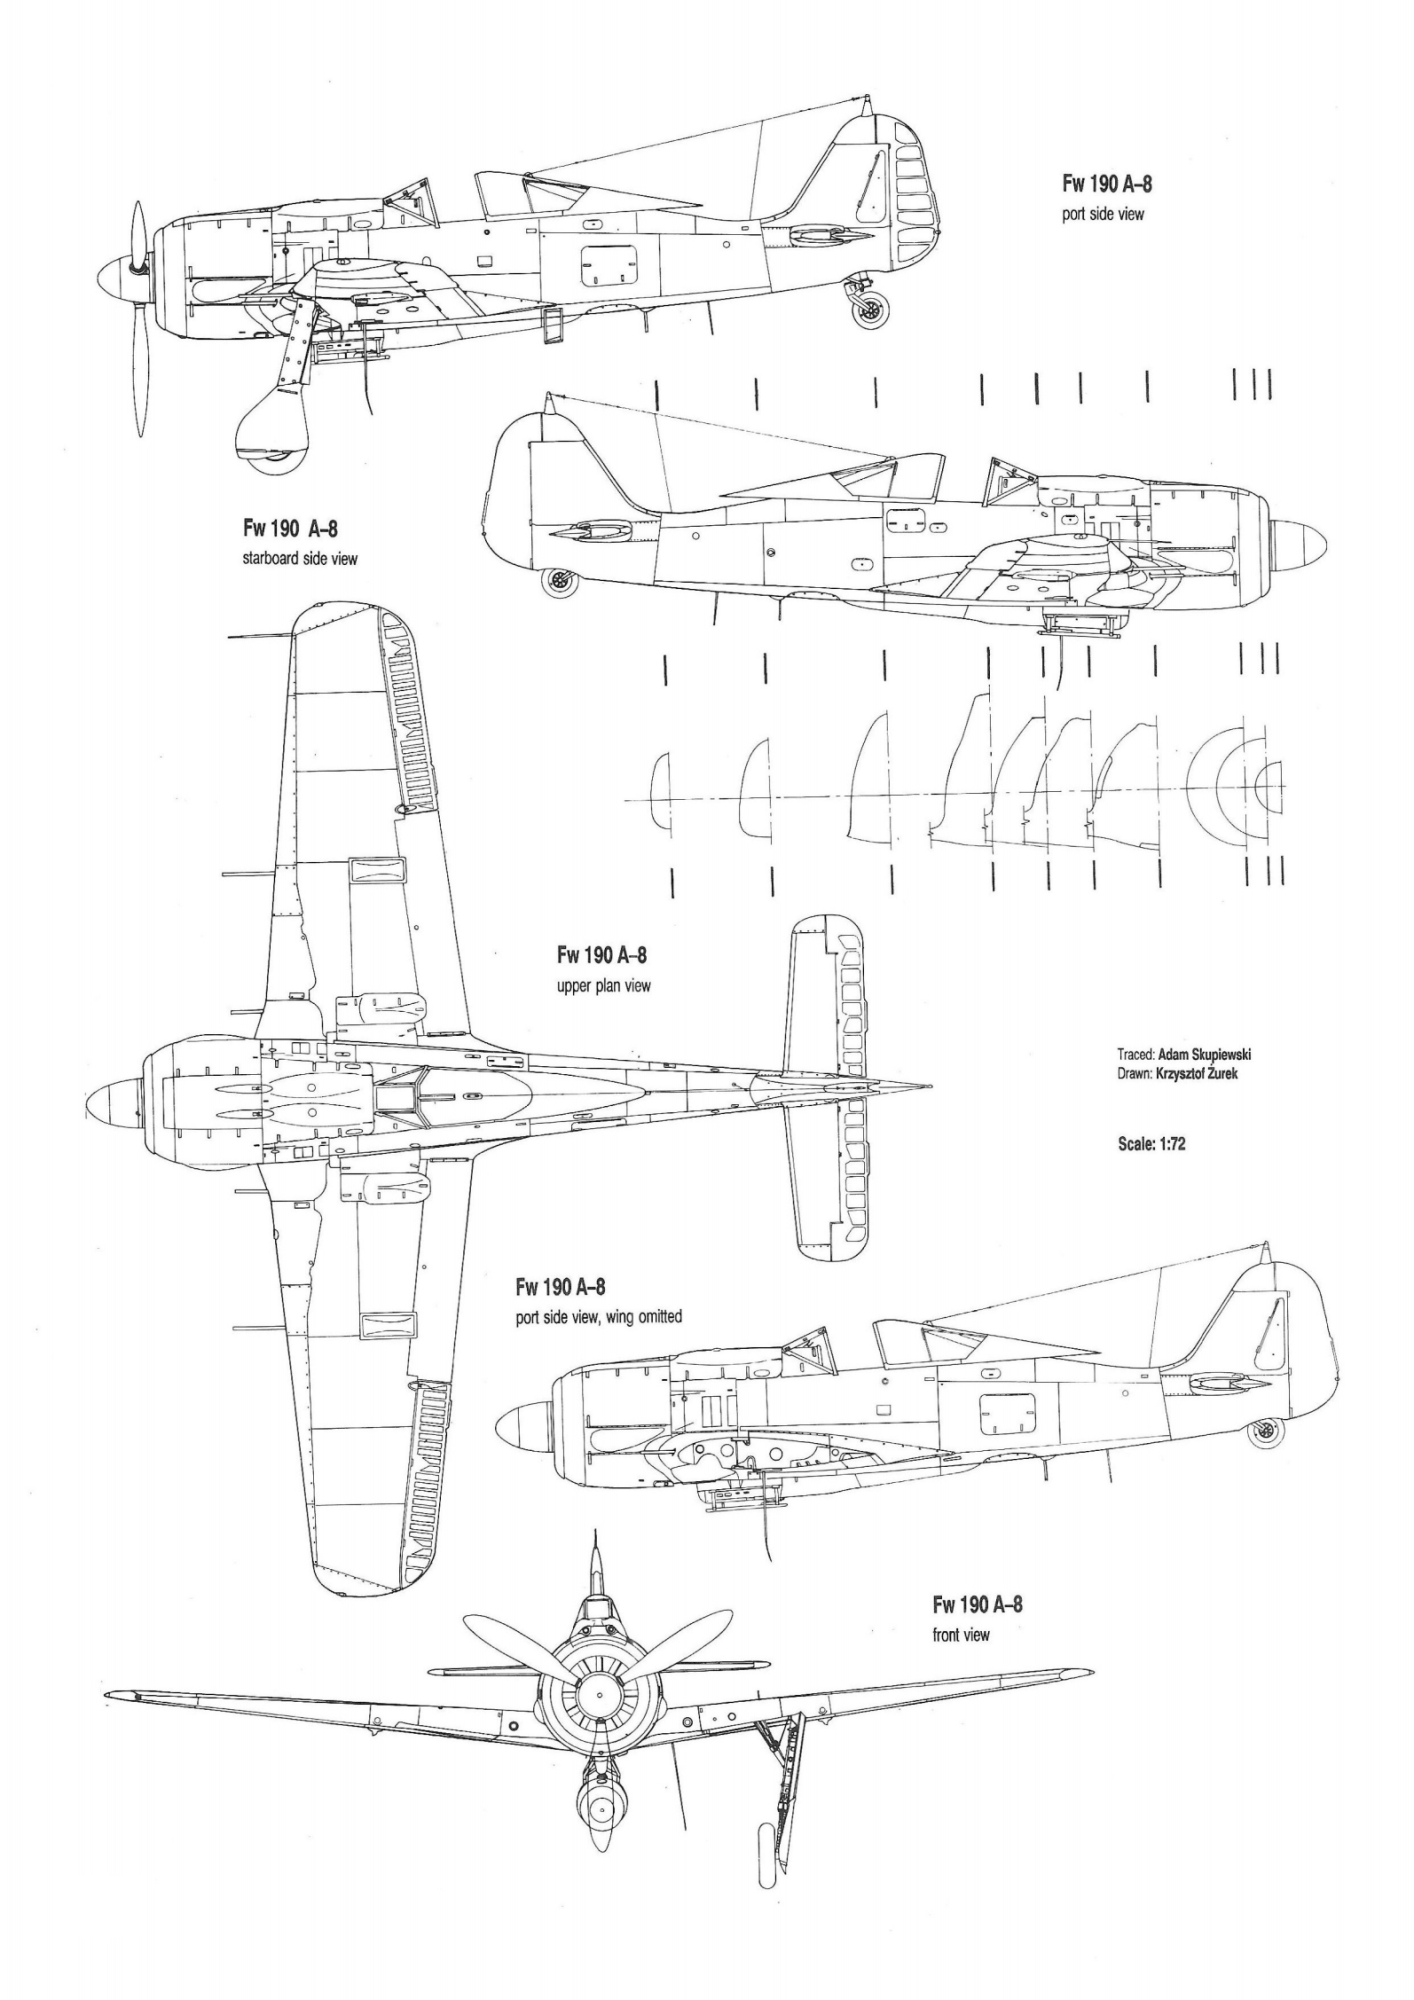 1706495374 358 Focke Wulf 190 A 8 Series